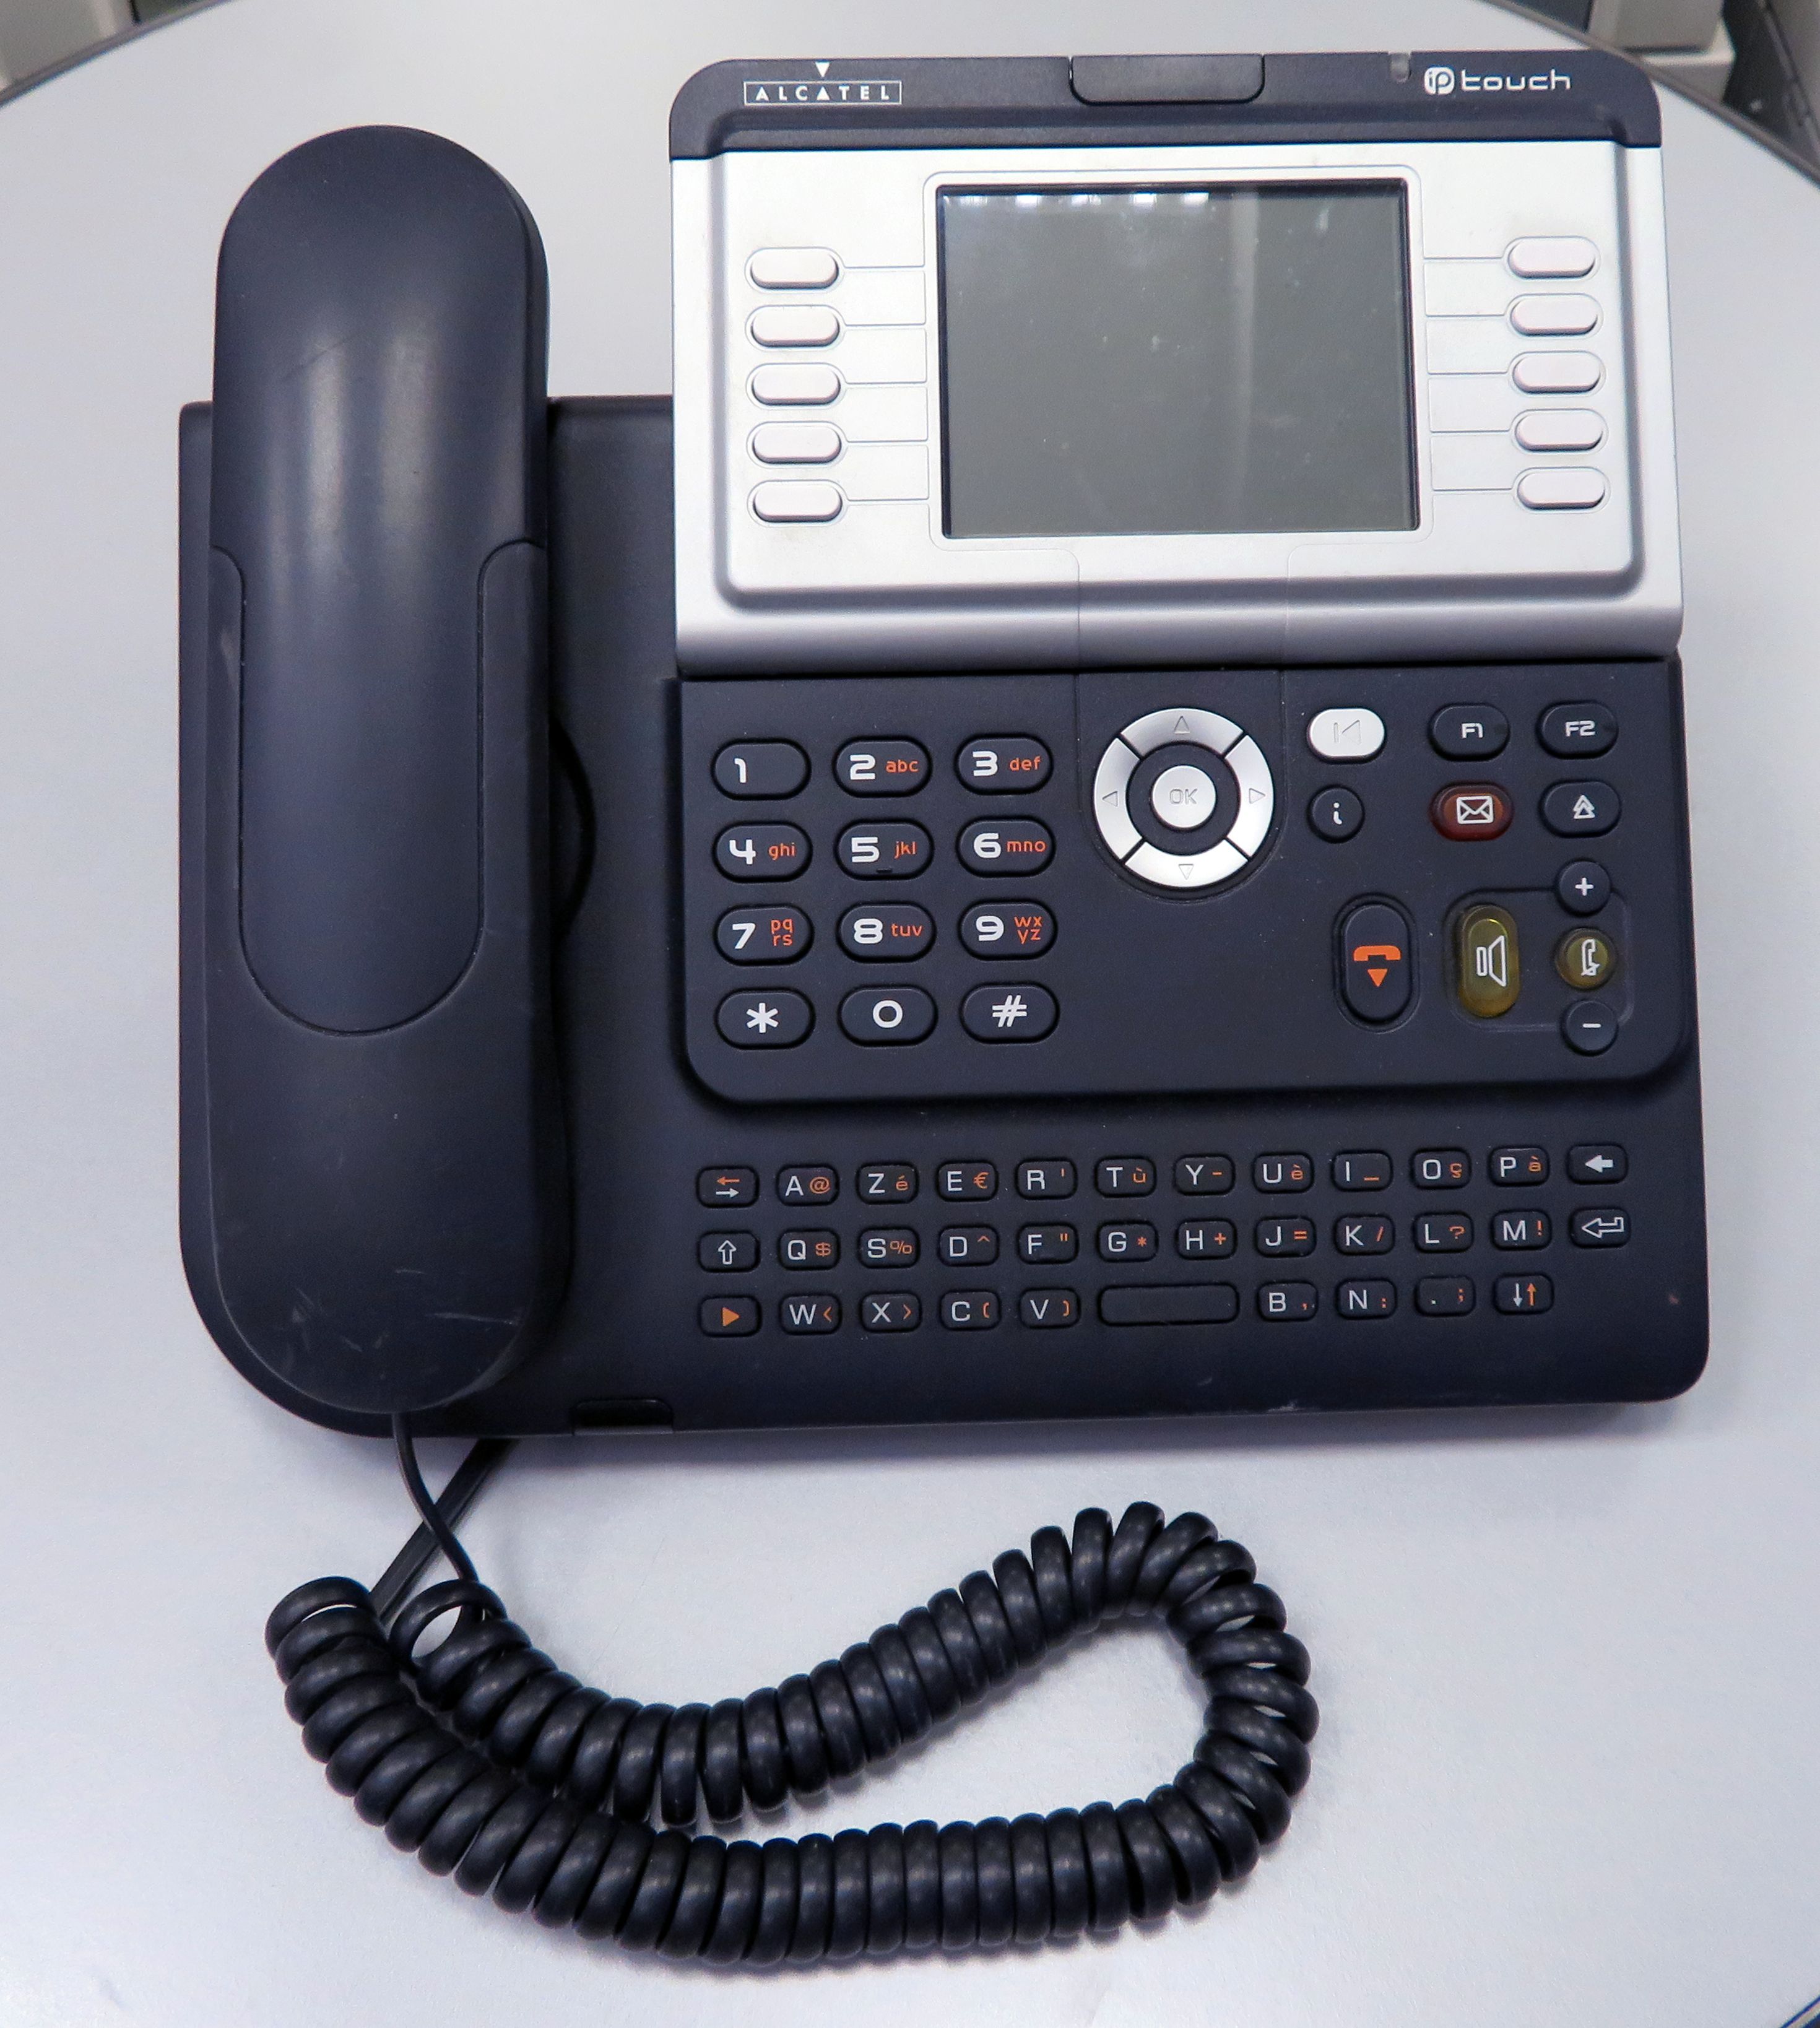 TELEPHONES IP DE MARQUE ALCATEL MODELE 4068. 43 UNITES